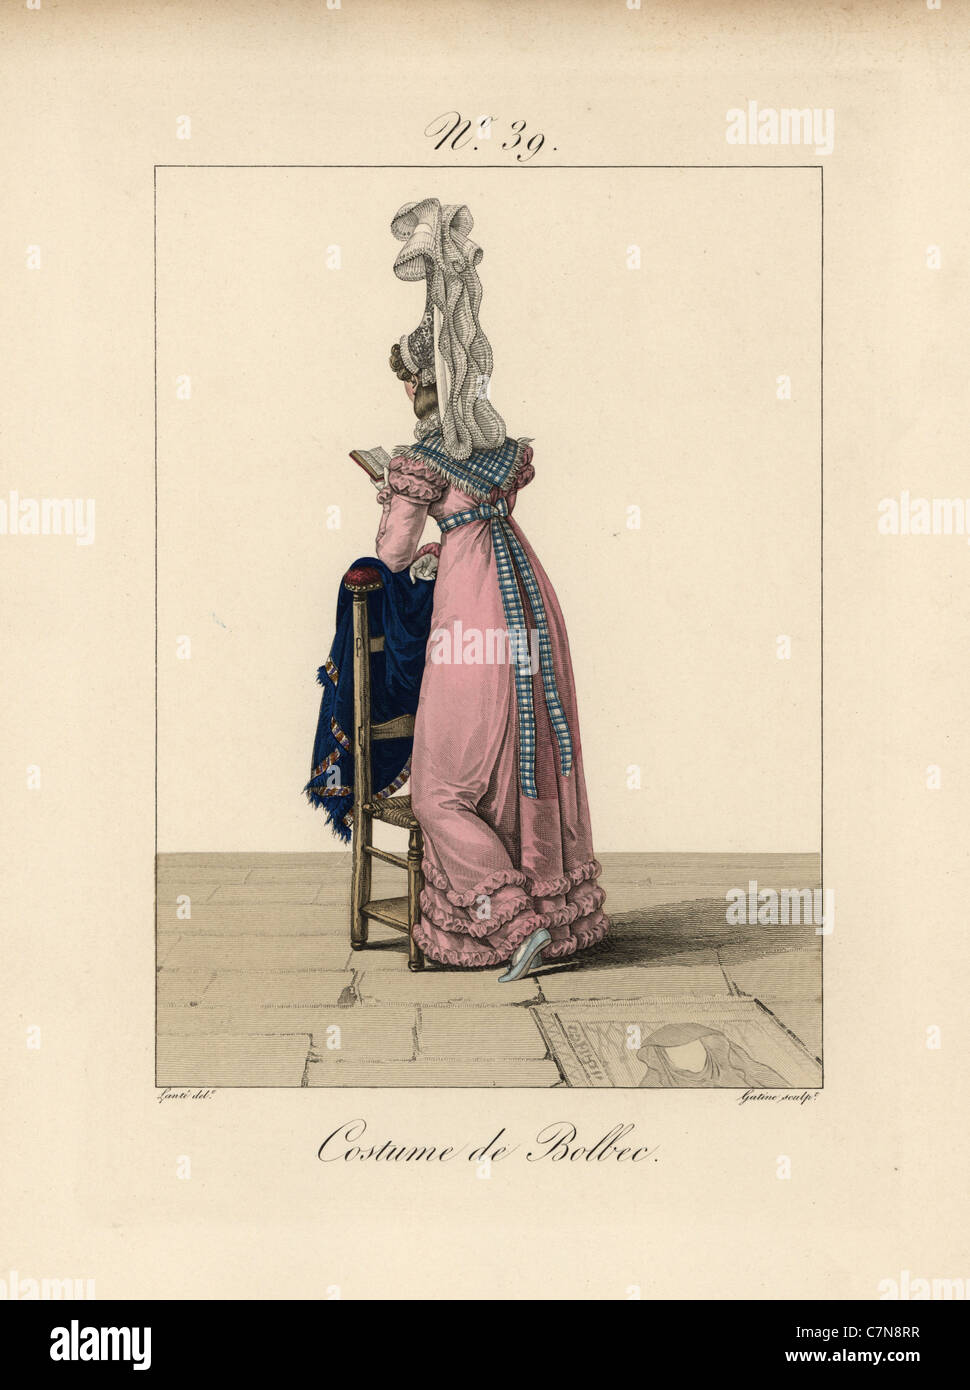 Frau im Kostüm von Bolbec, ein Buch zu lesen, bei einer Rast gegen einen Stuhl. Stockfoto